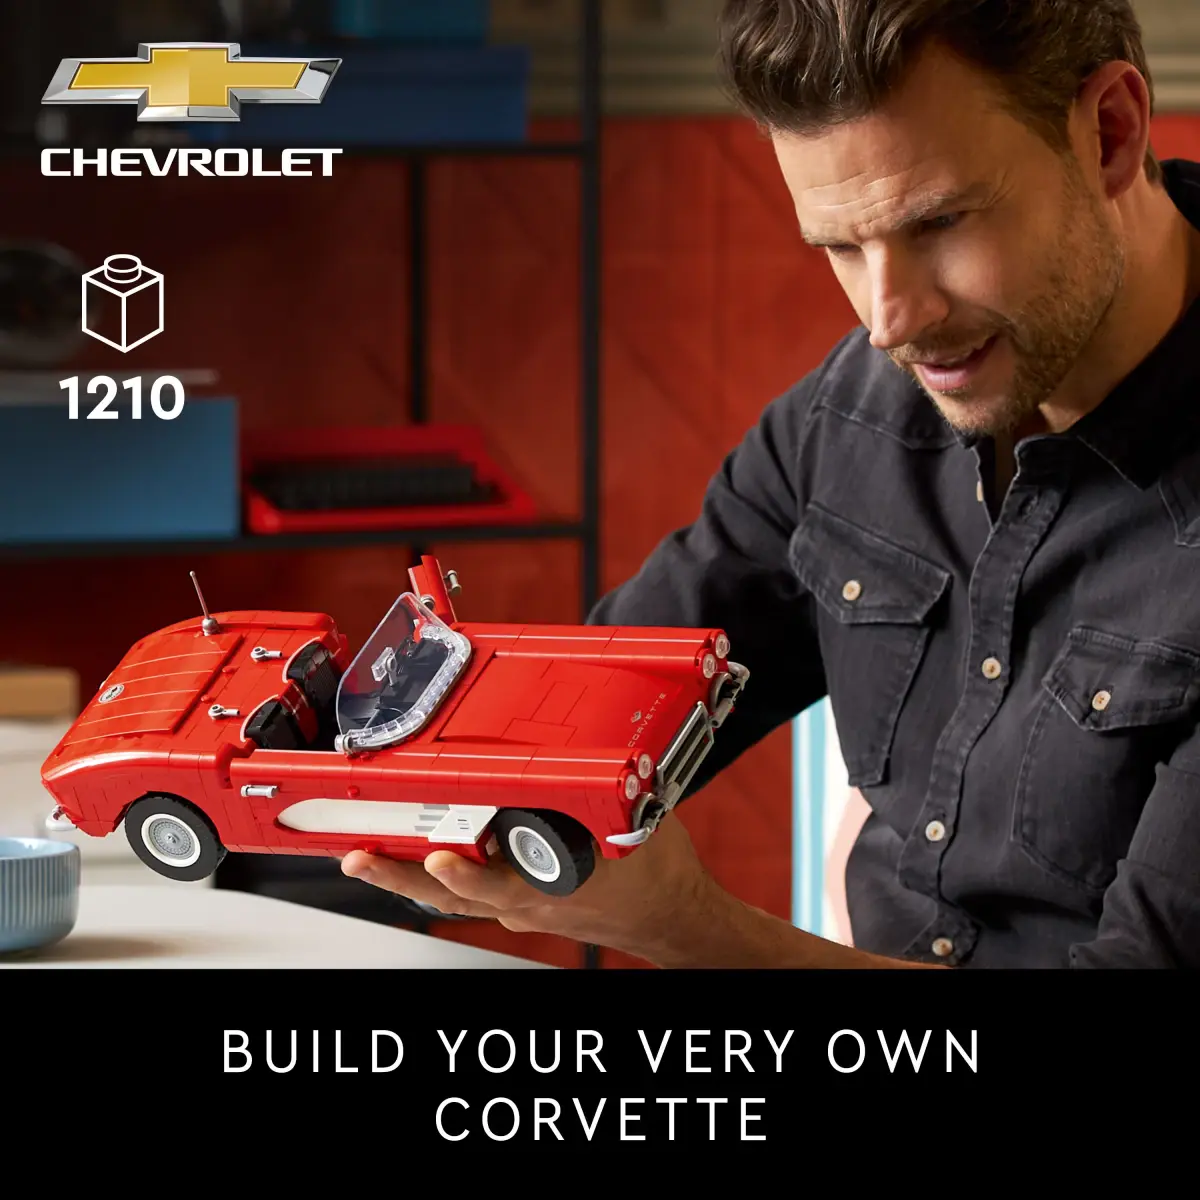 LEGO Icons Corvette Building Kit 10321 (1,210 Pieces), 18Y+, Multicolour